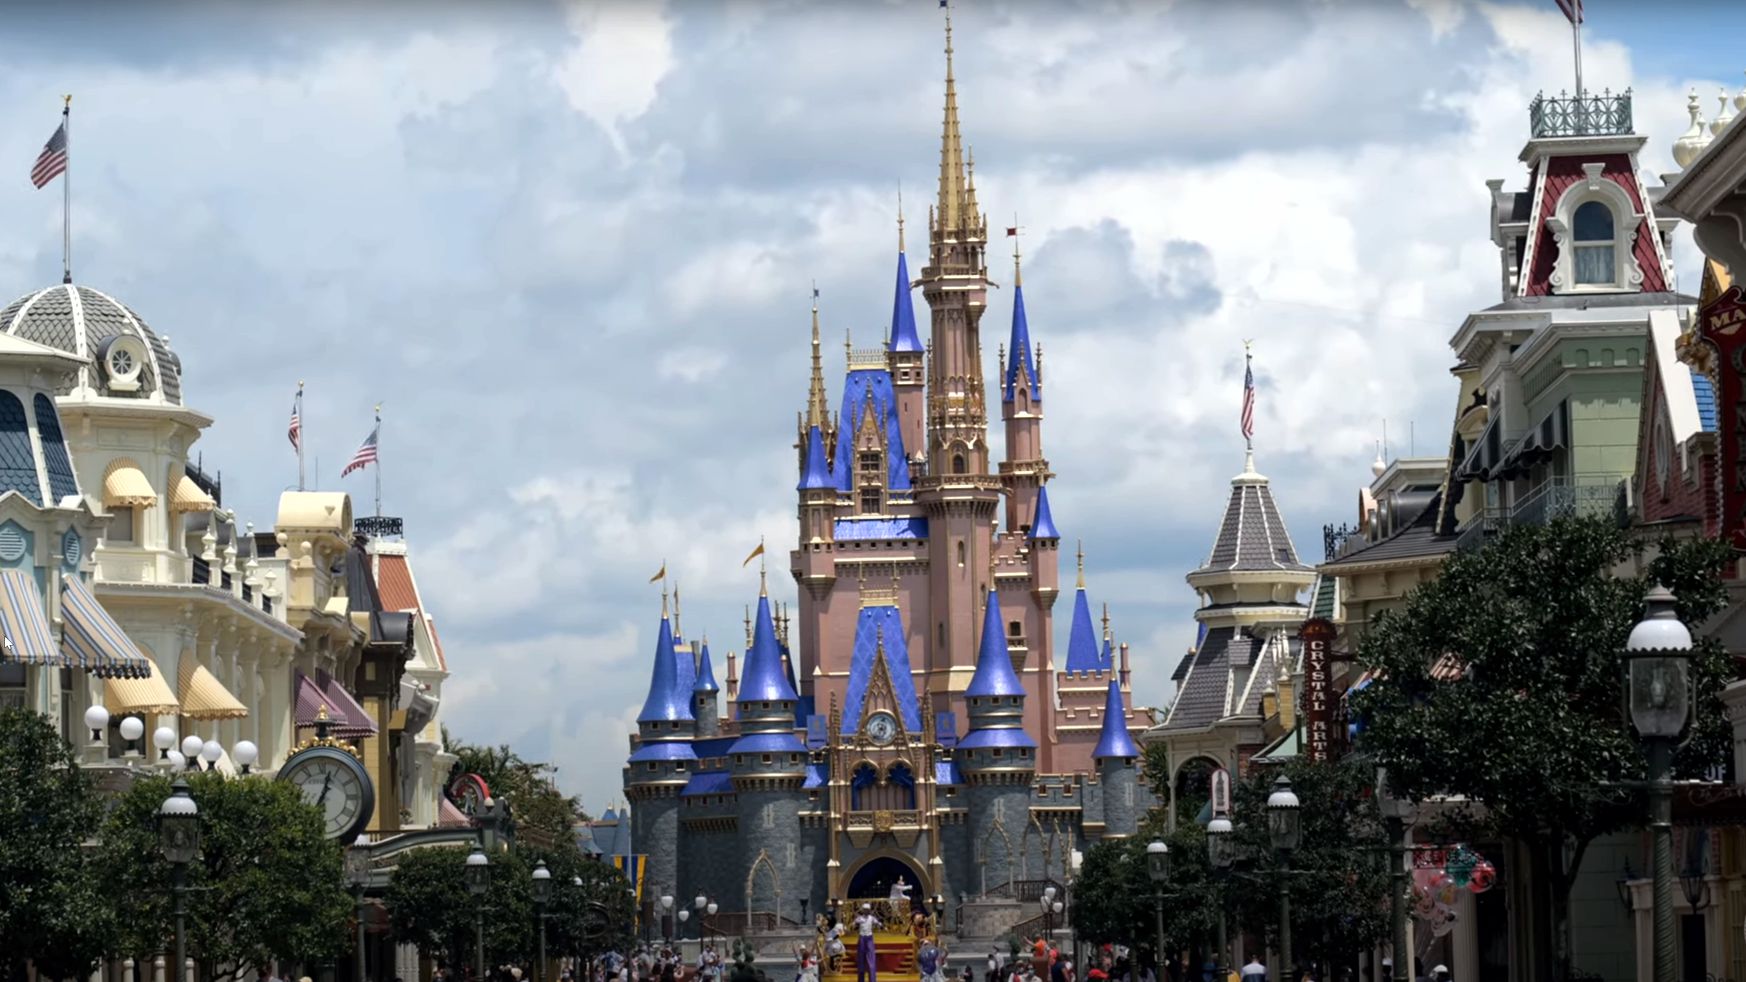 Cinderella Castle at Magic Kingdom Orlando Florida